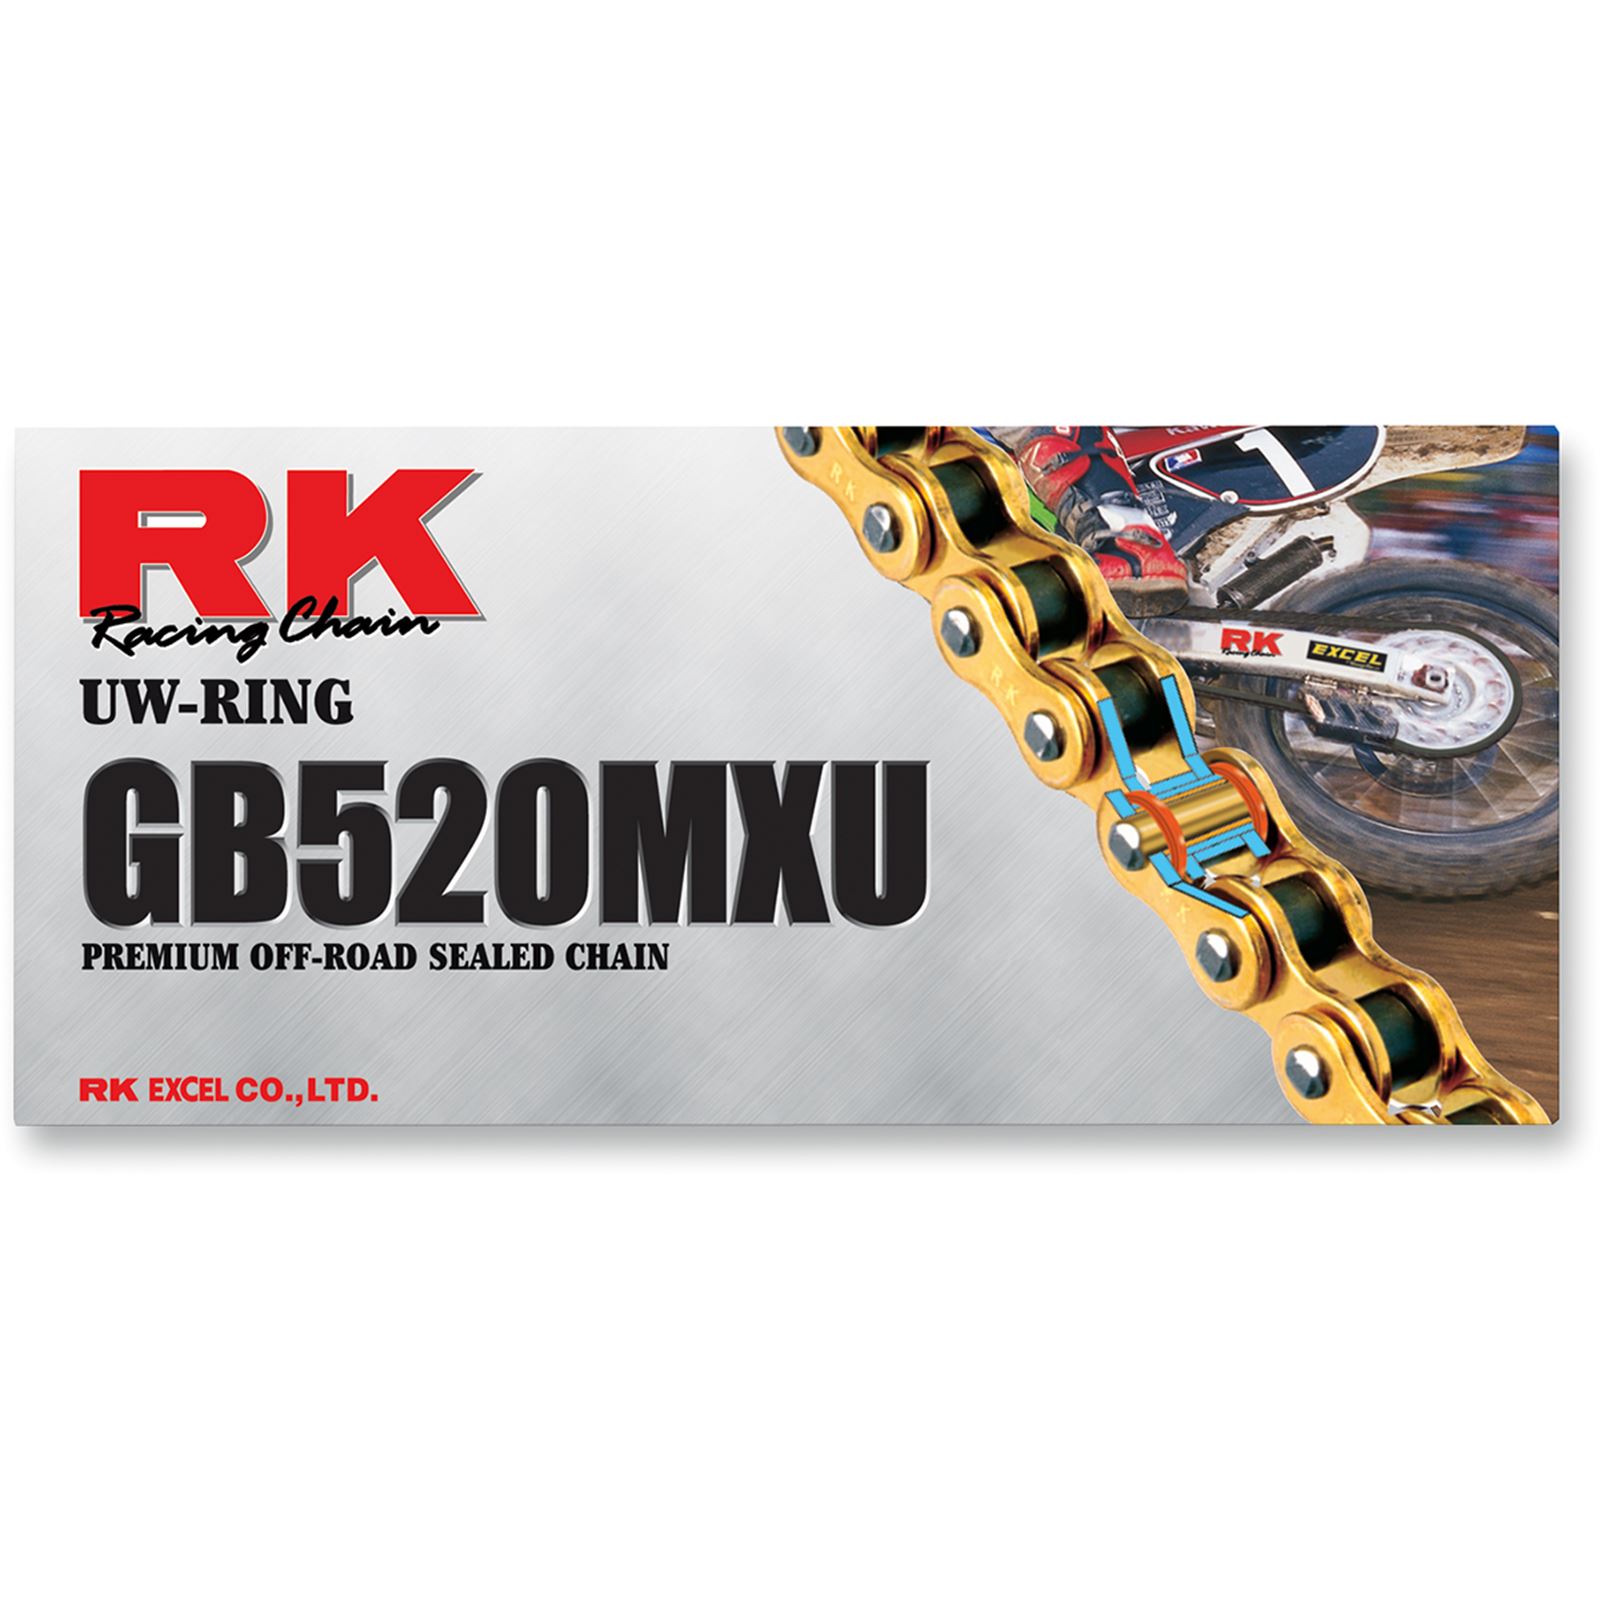 RK Excel 520 MXU - Sealed Racing UW-Ring Chain - 110 Links